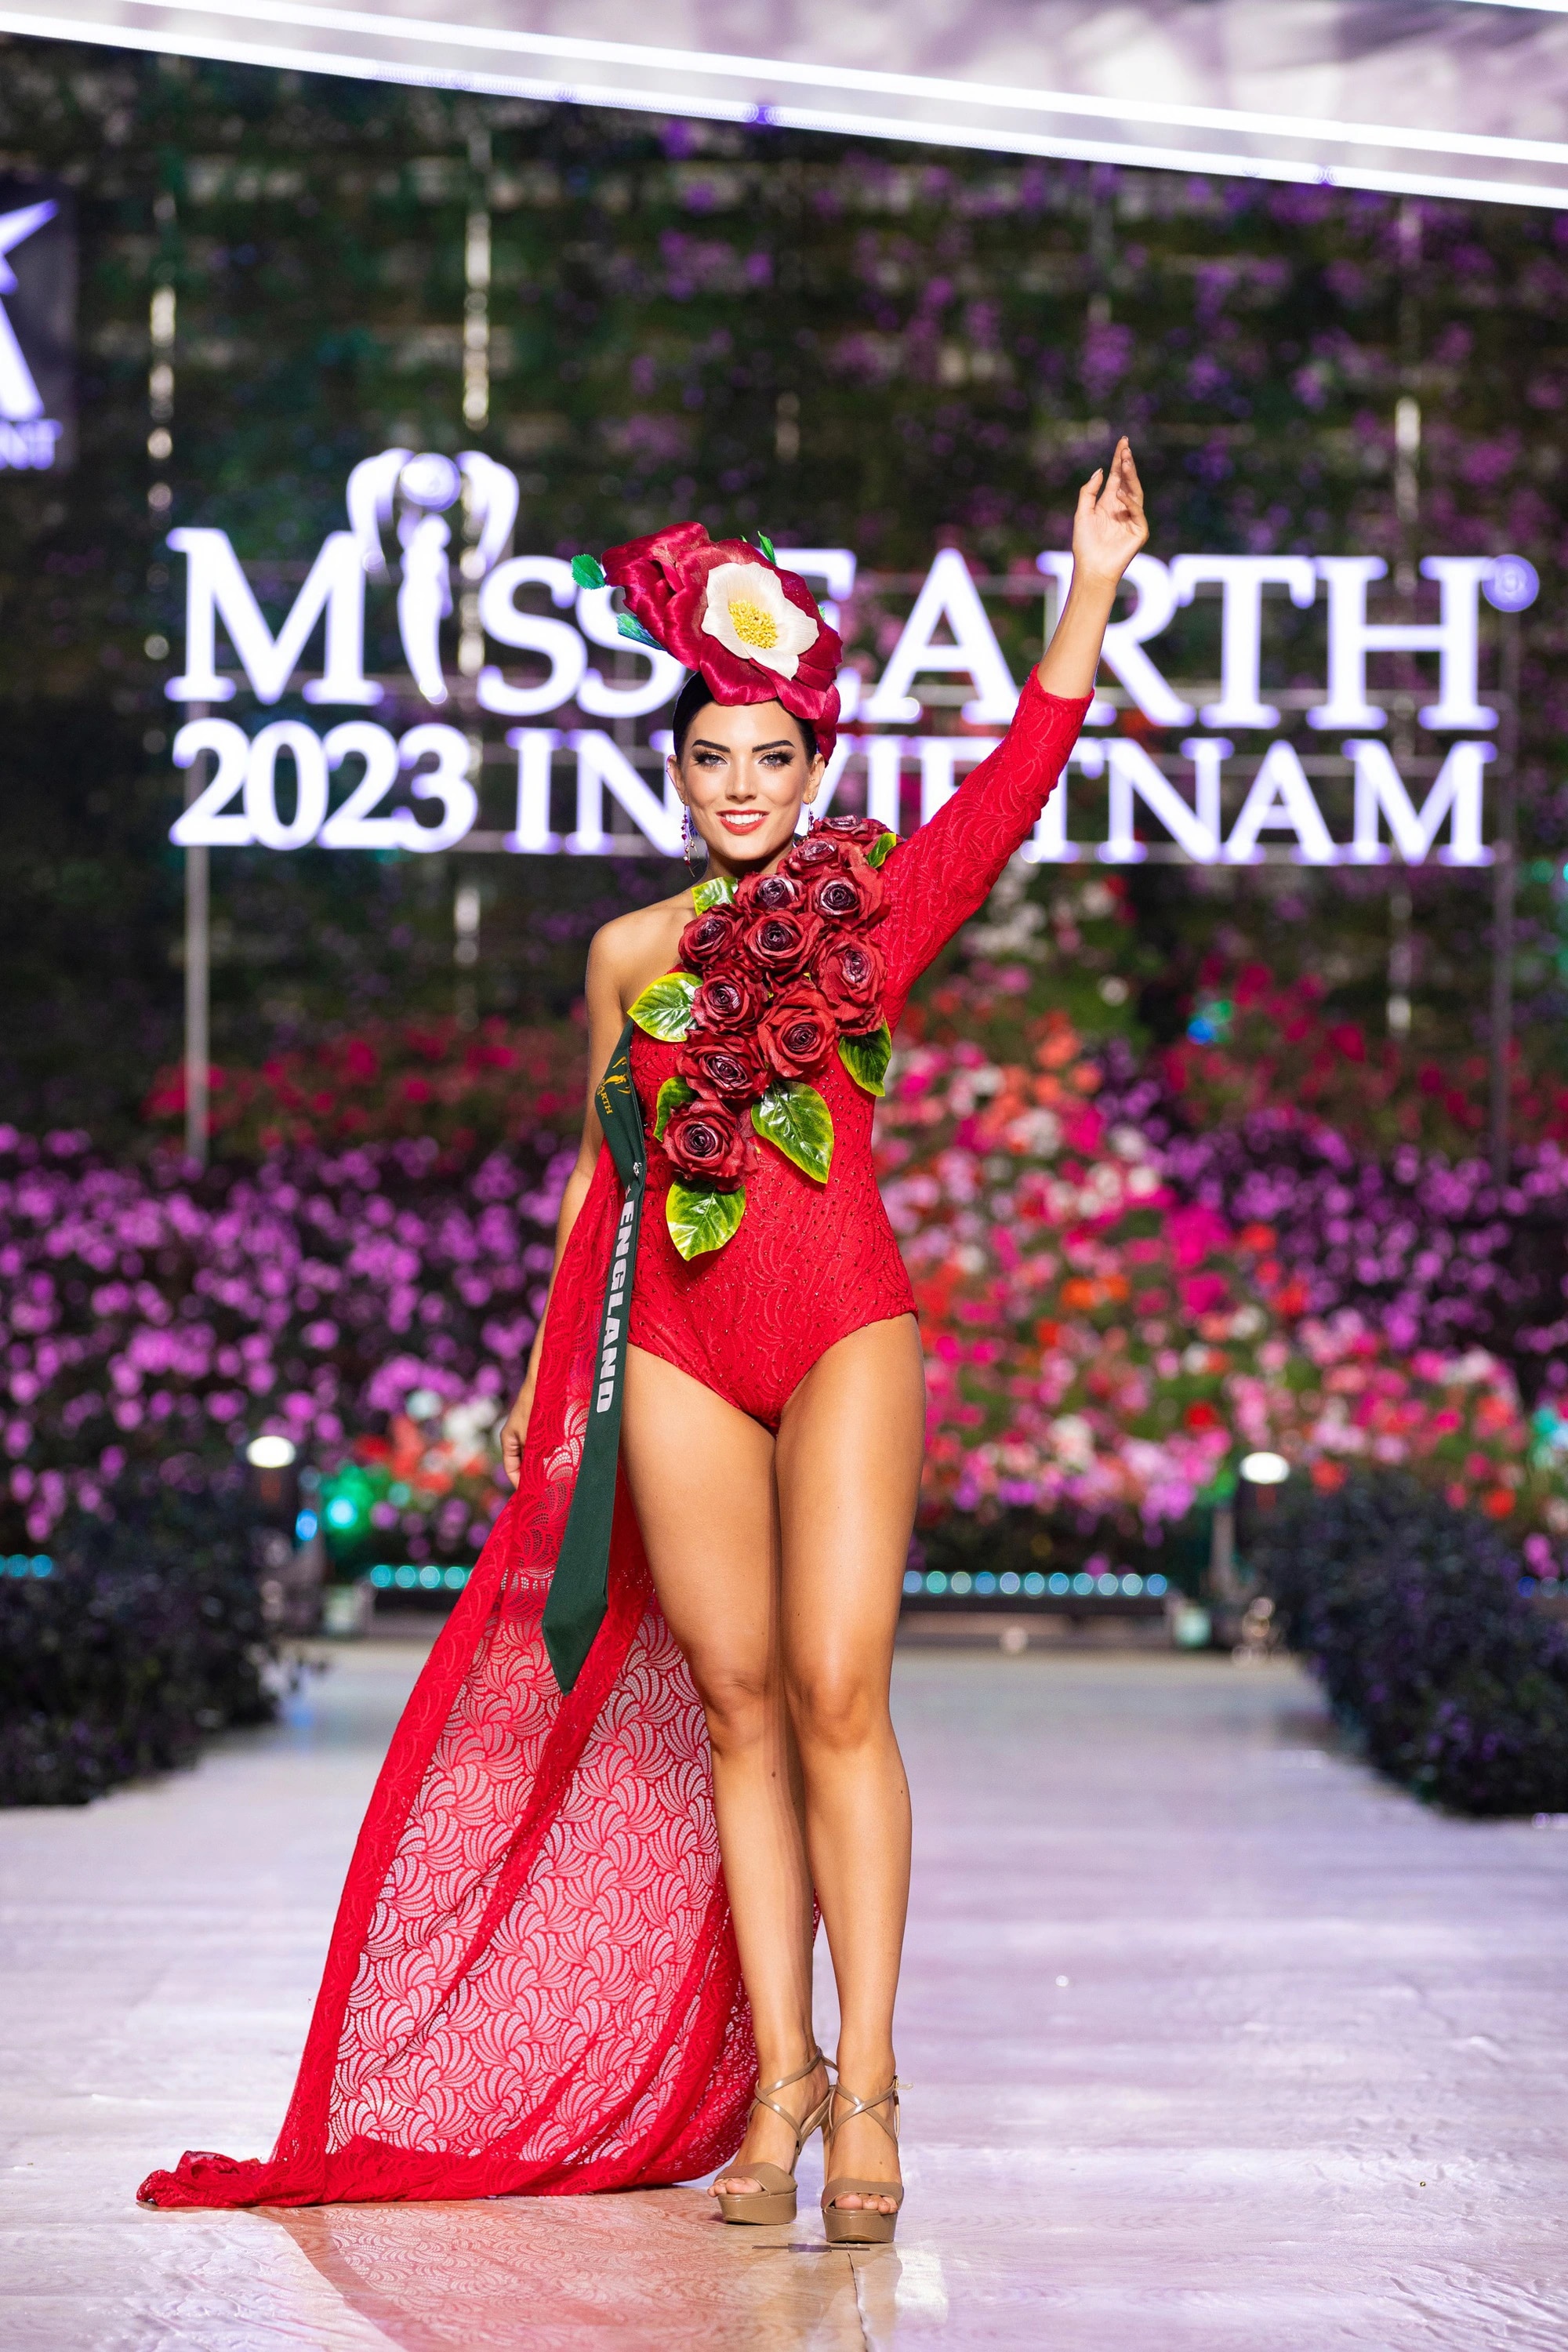 Bán kết Miss Earth 2023 màn trình Trang phục Dân tộc bùng nổ hình ảnh cỏ hoa, muông thú - Ảnh 31.